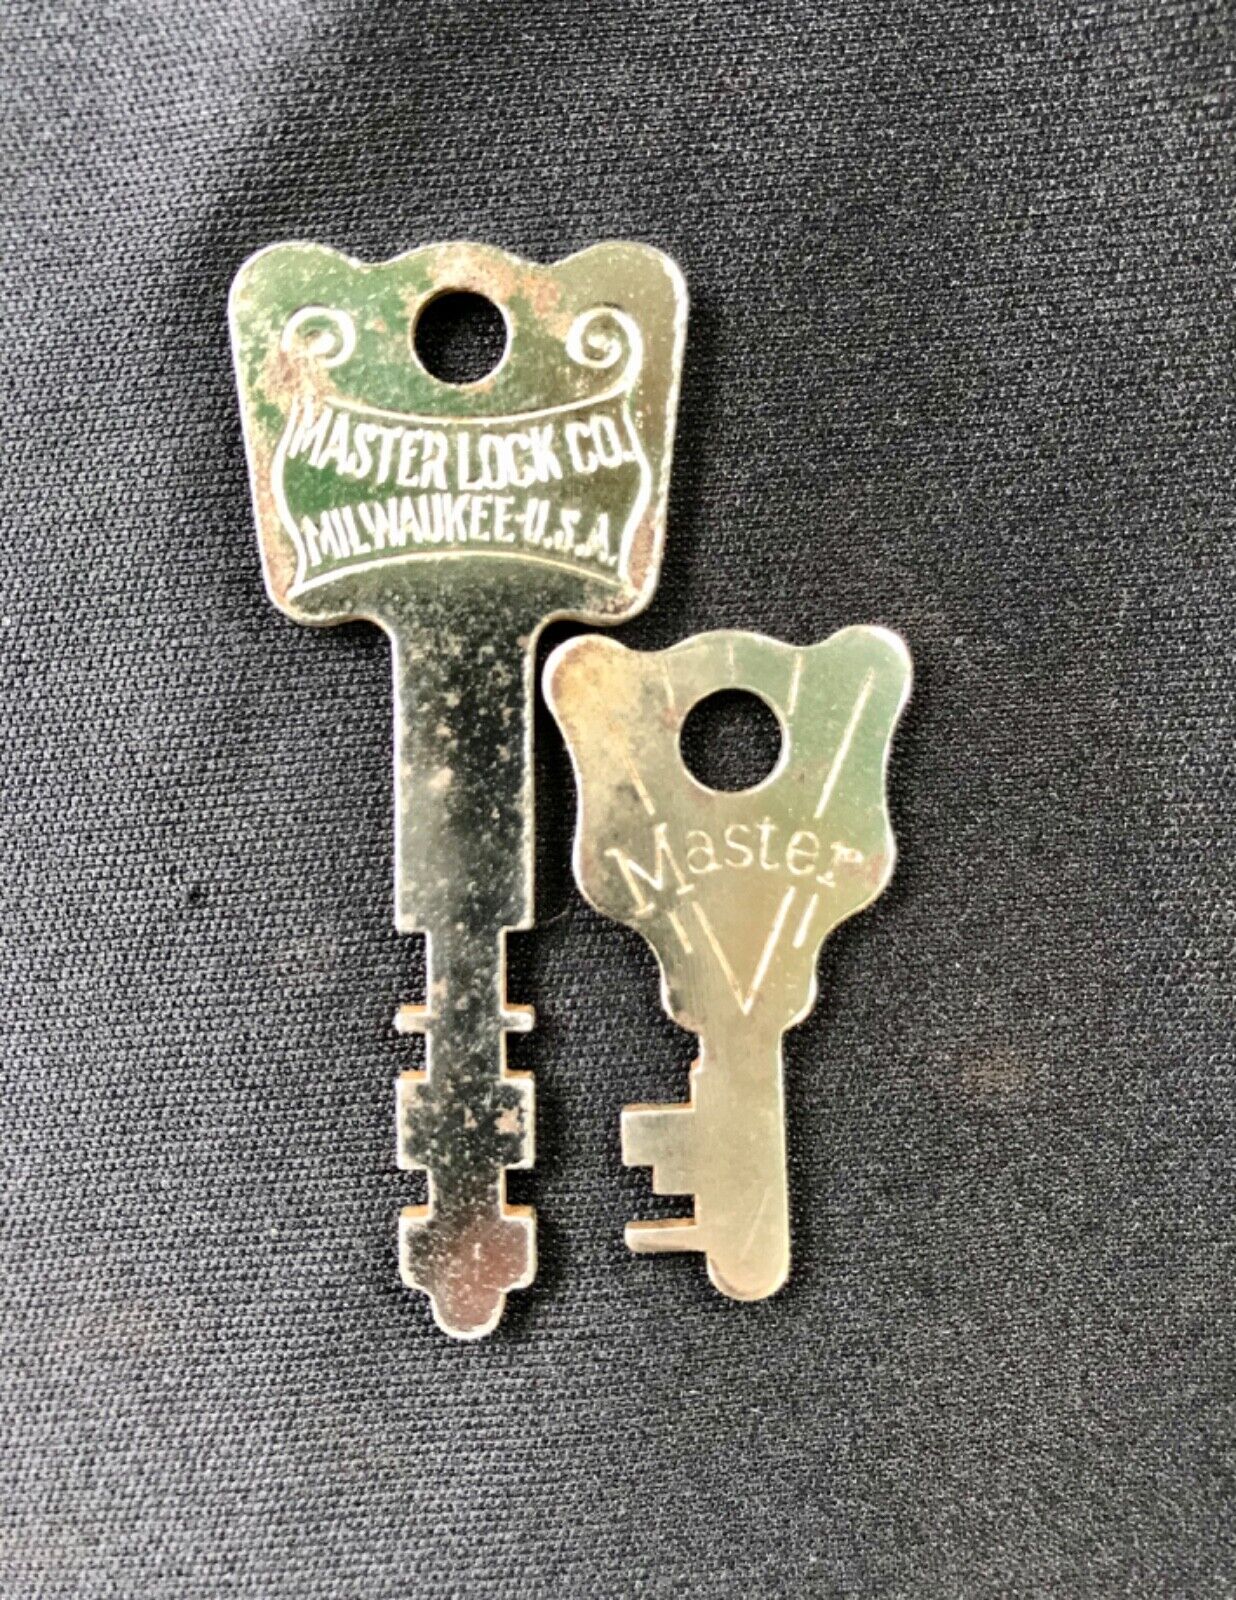 Lot Of 2 Vintage Antique Master Lock Co Keys, Flat Skeleton, Original (Group 1)